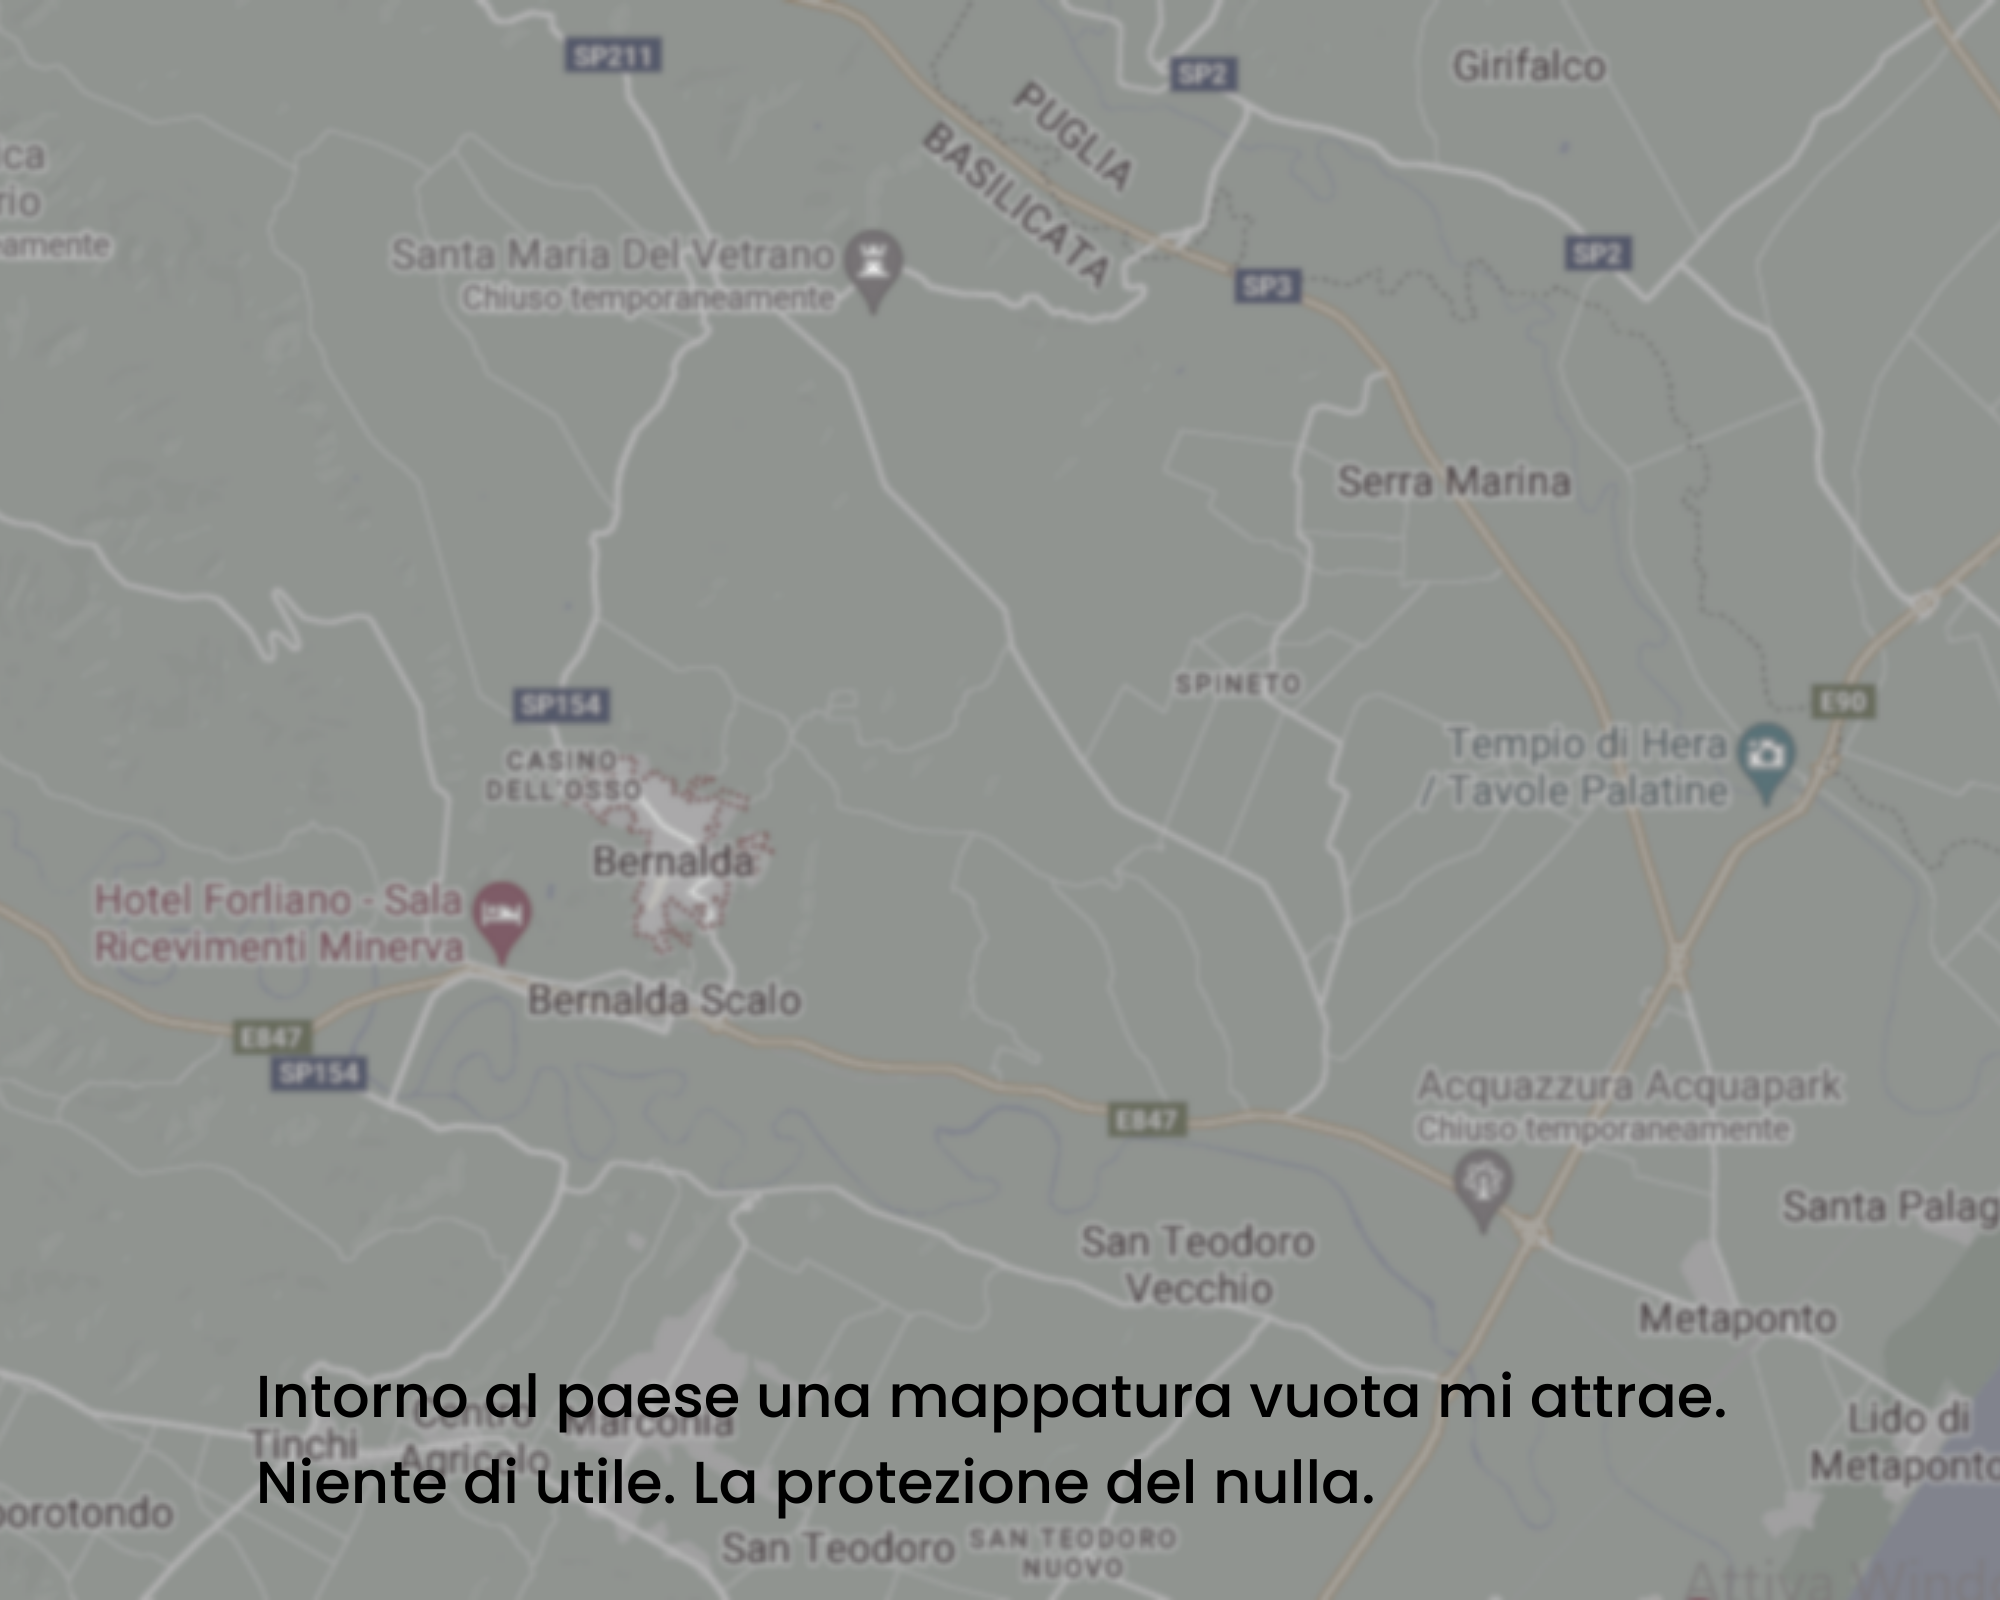 Google map: Basilicata, provincia di Matera, territorio bernaldese Intorno al paese una mappatura vuota mi attrae. Niente di utile. La protezione del nulla